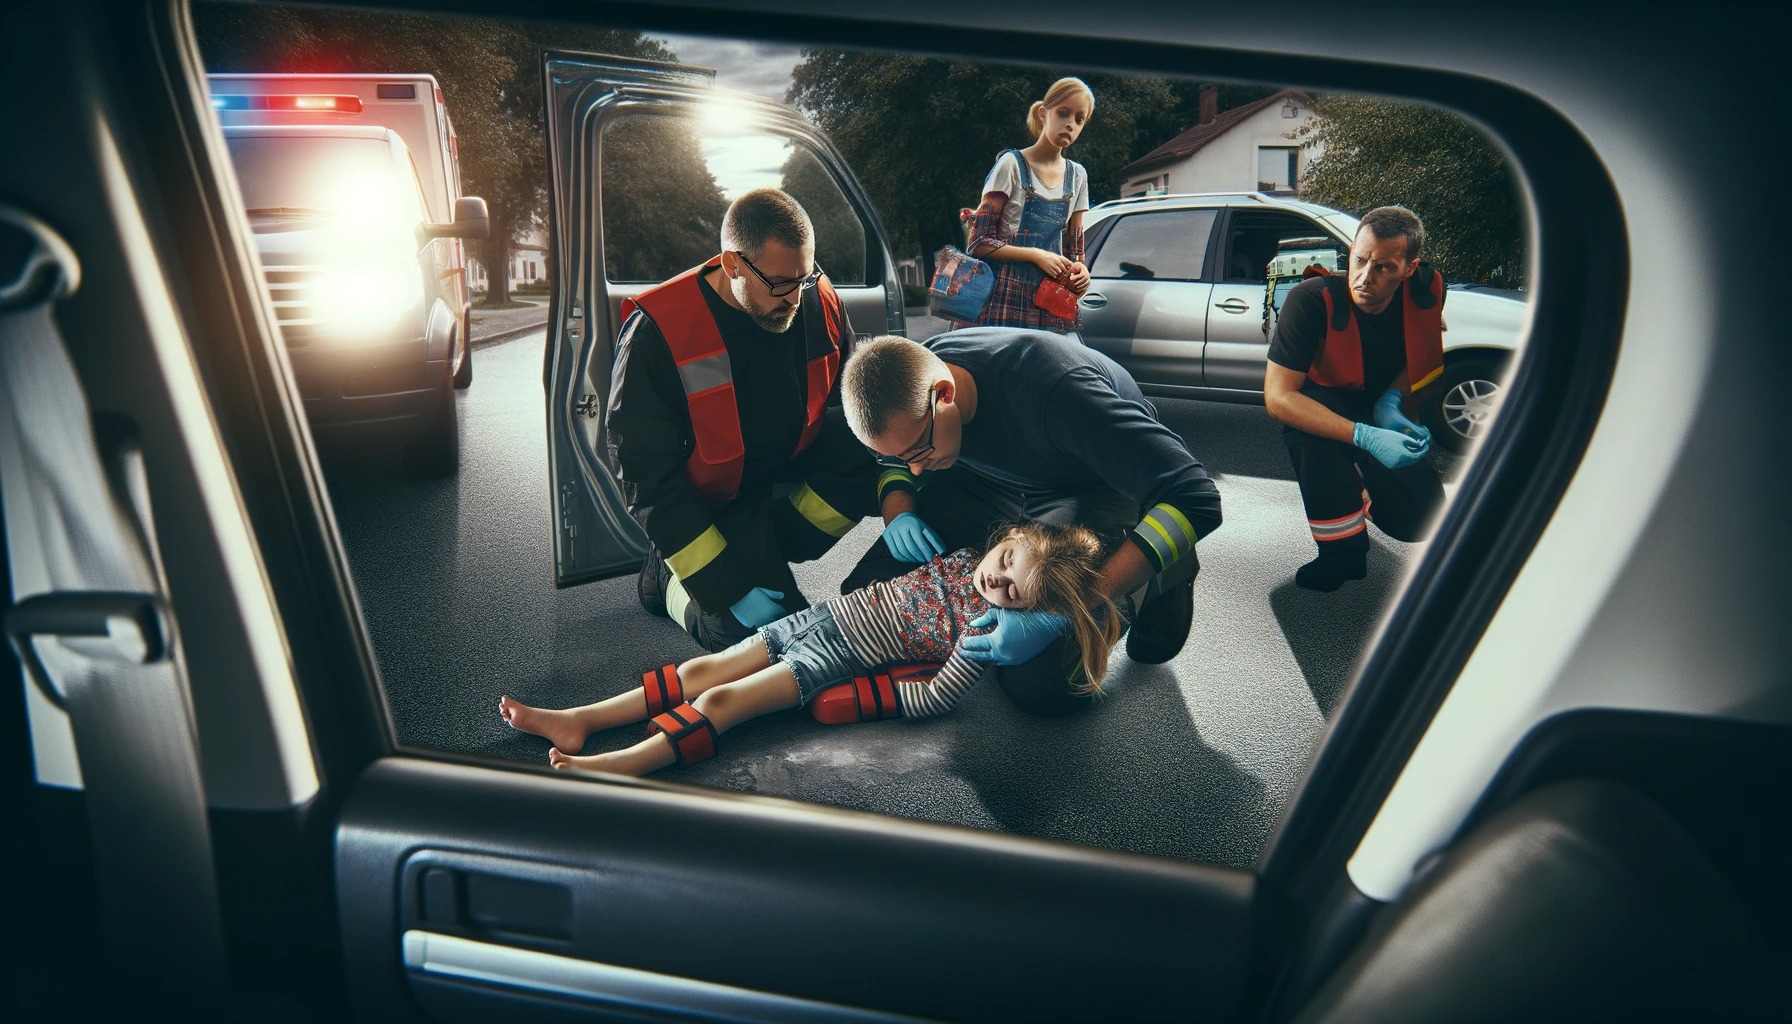 【緊急】車のパワーウインドーに首挟まれ女児が死亡した事故、ヤバすぎる模様